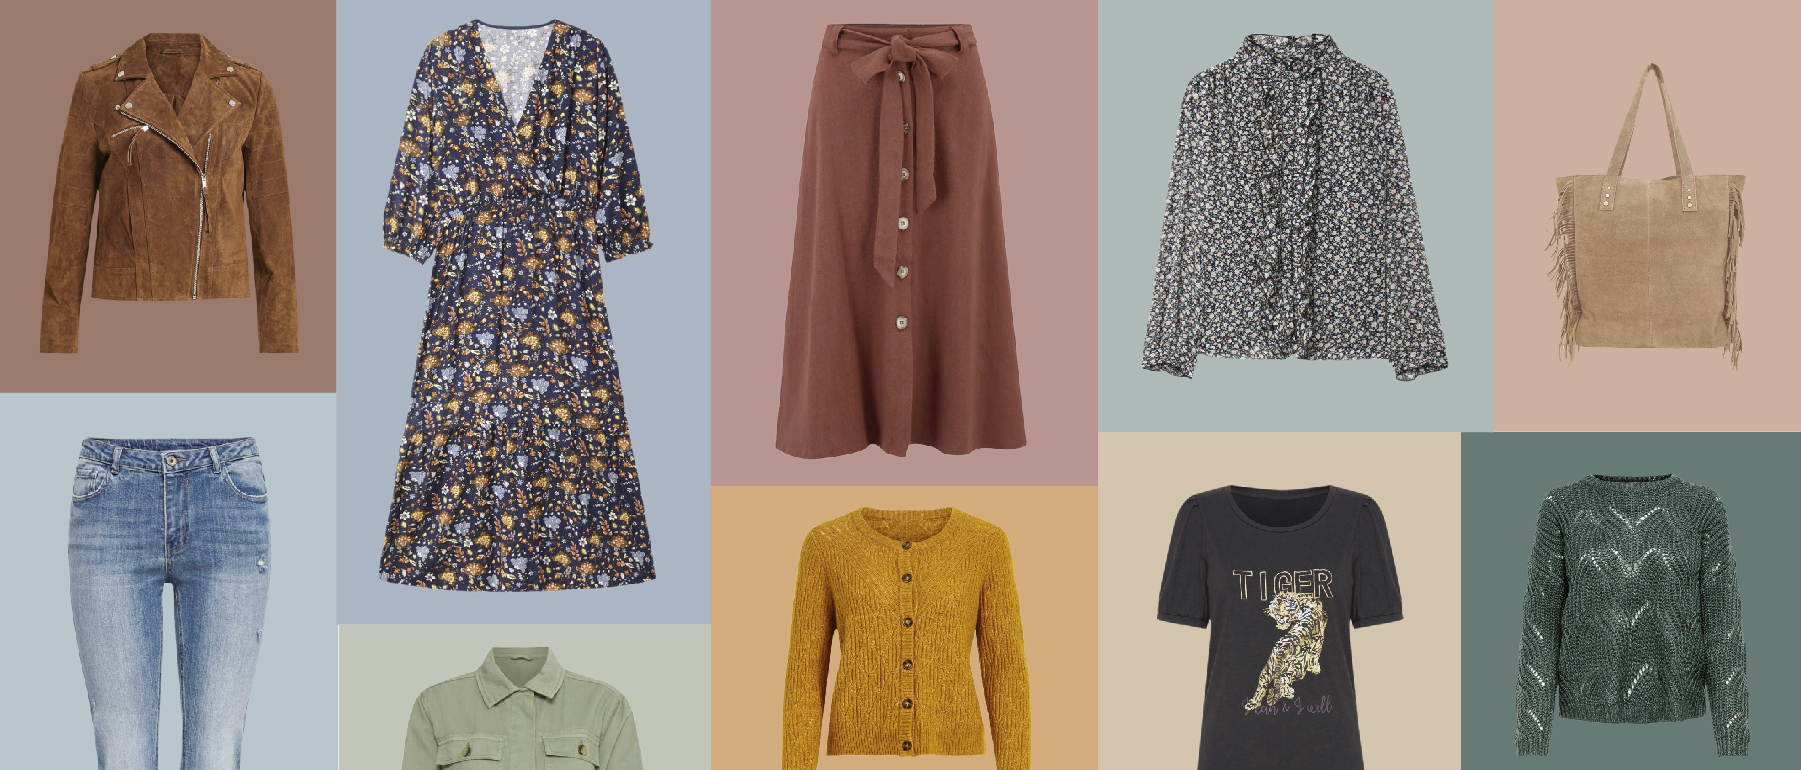 10 prendas en plena tendencia para vestir tu armario de otoño 2020 -  Lookiero Blog